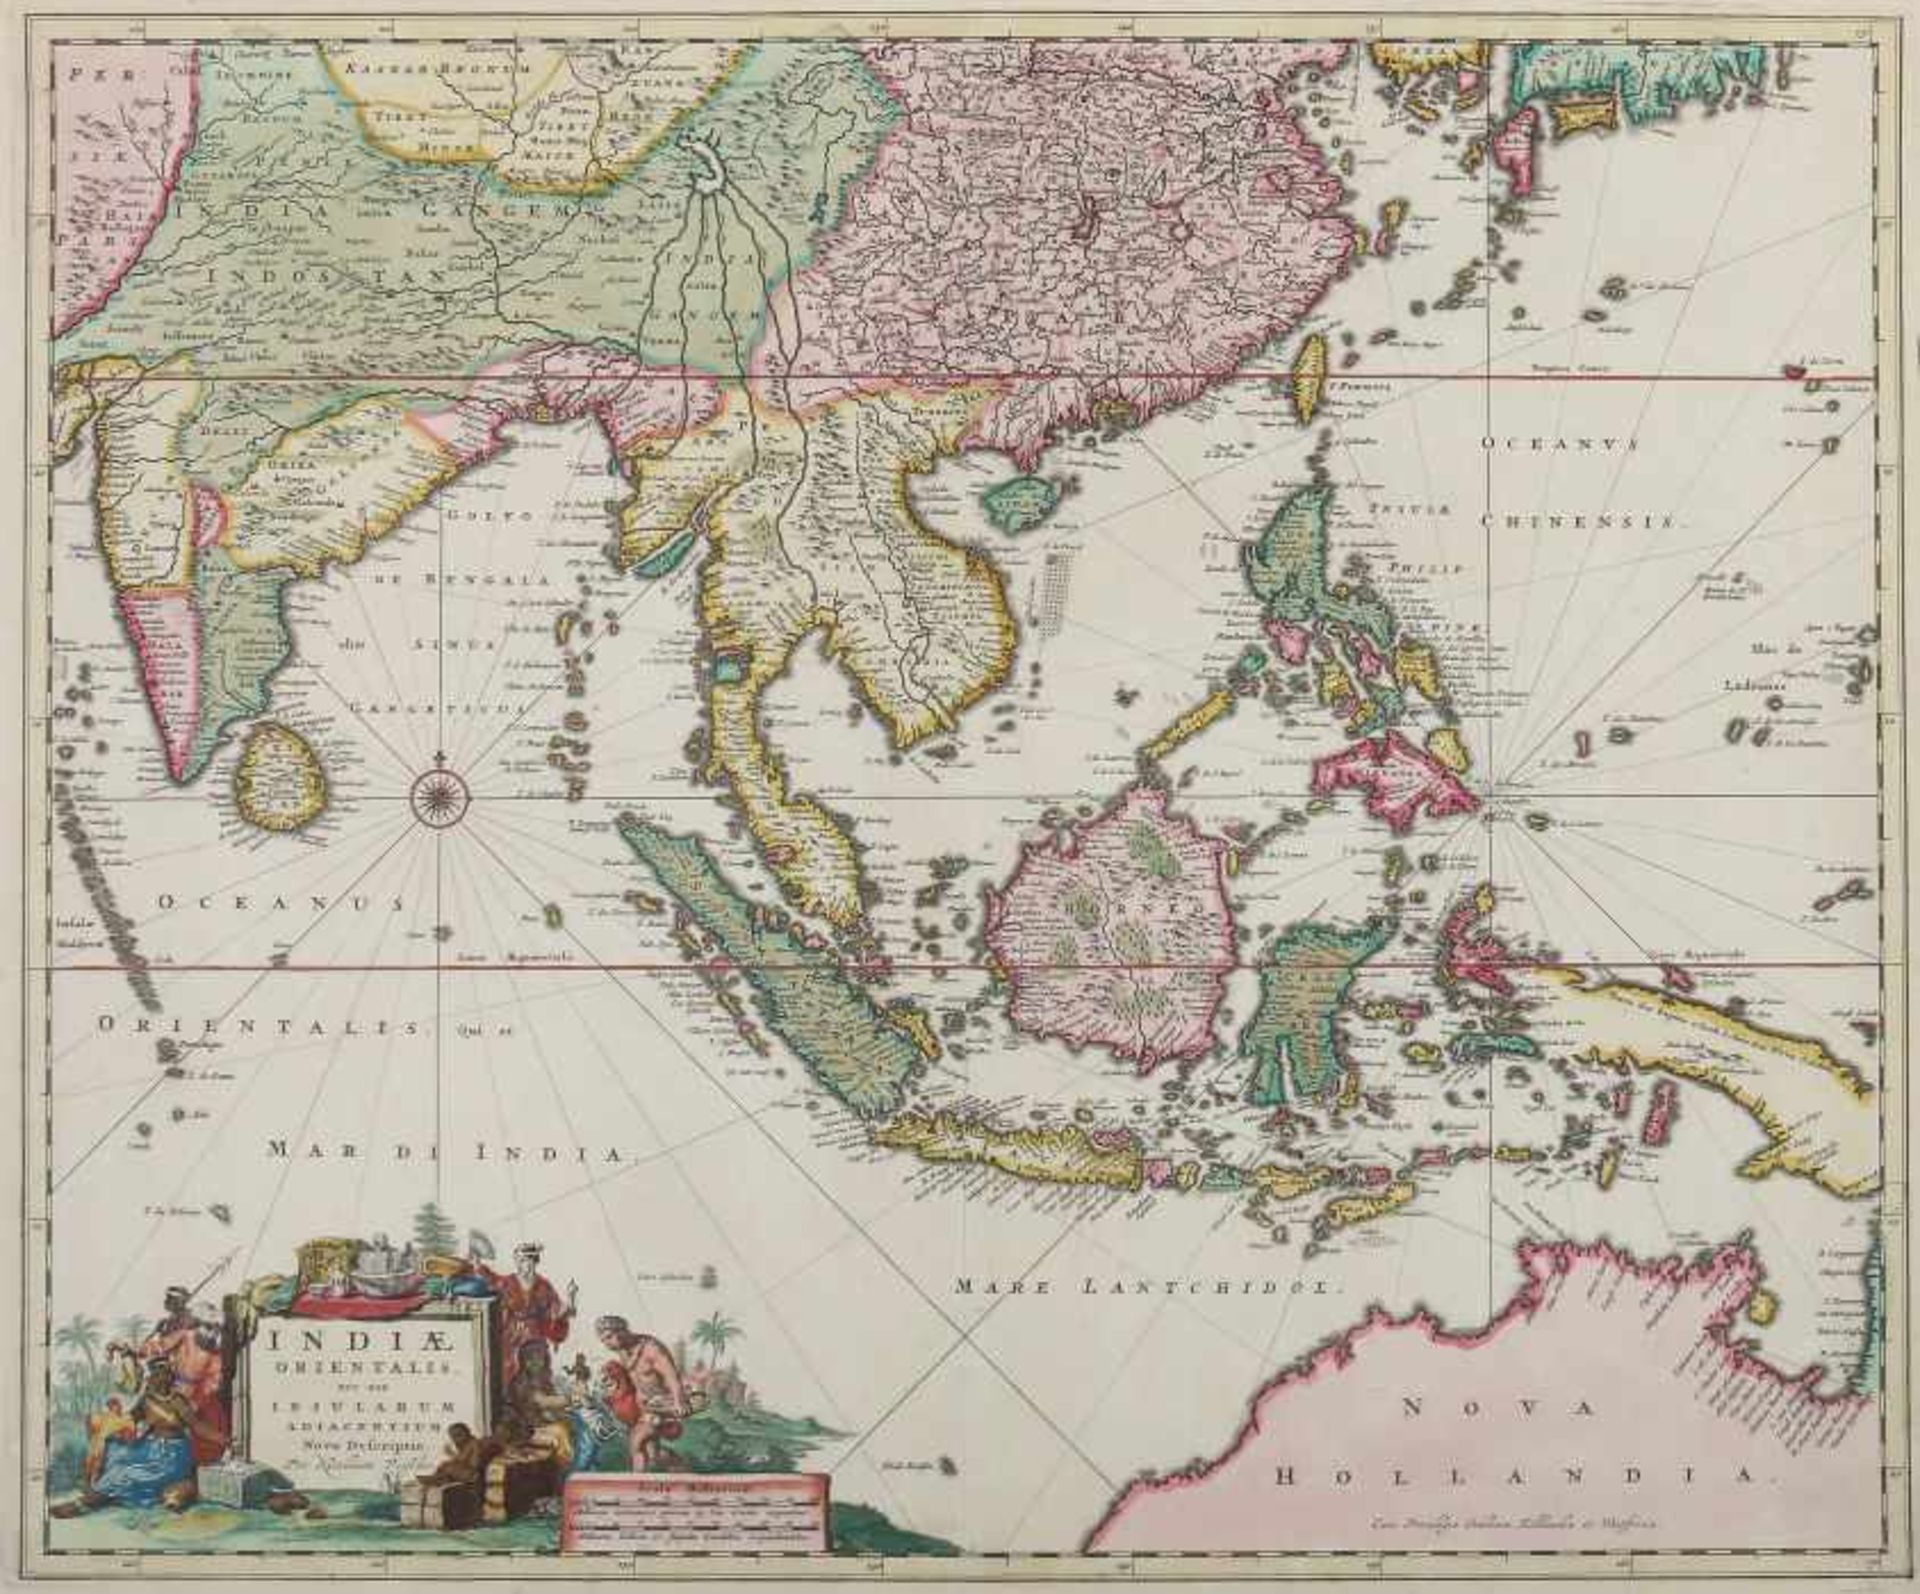 Visscher, Nicolas 1618 - 1709, Kupferstecher und Verleger in Amsterdam. "Indiae orientalis. Nec